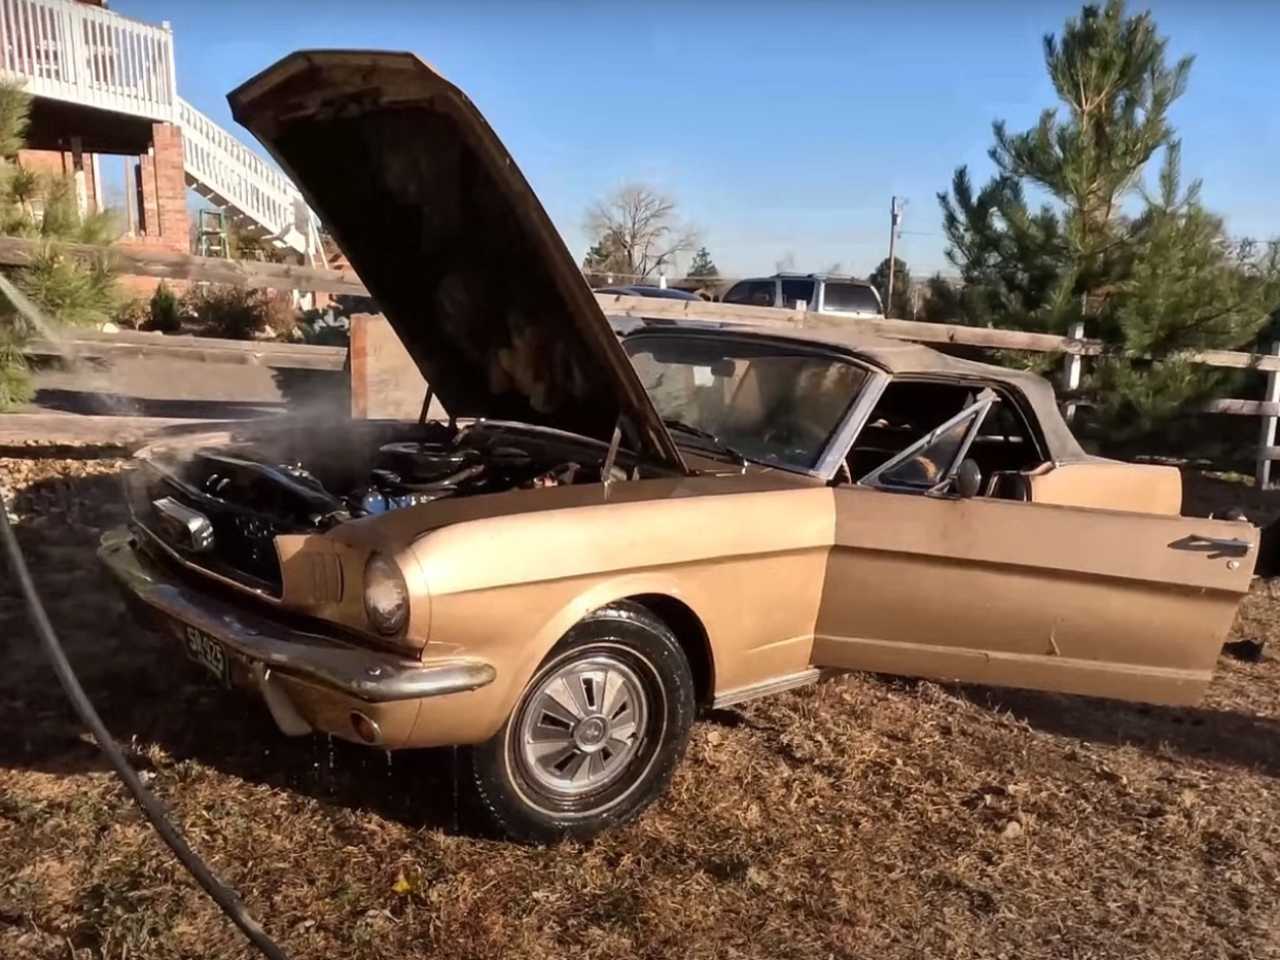 Ford Mustang 1966 foi deixado em um celeiro nos Estados Unidos, mas até que resistiu bem ao tempo